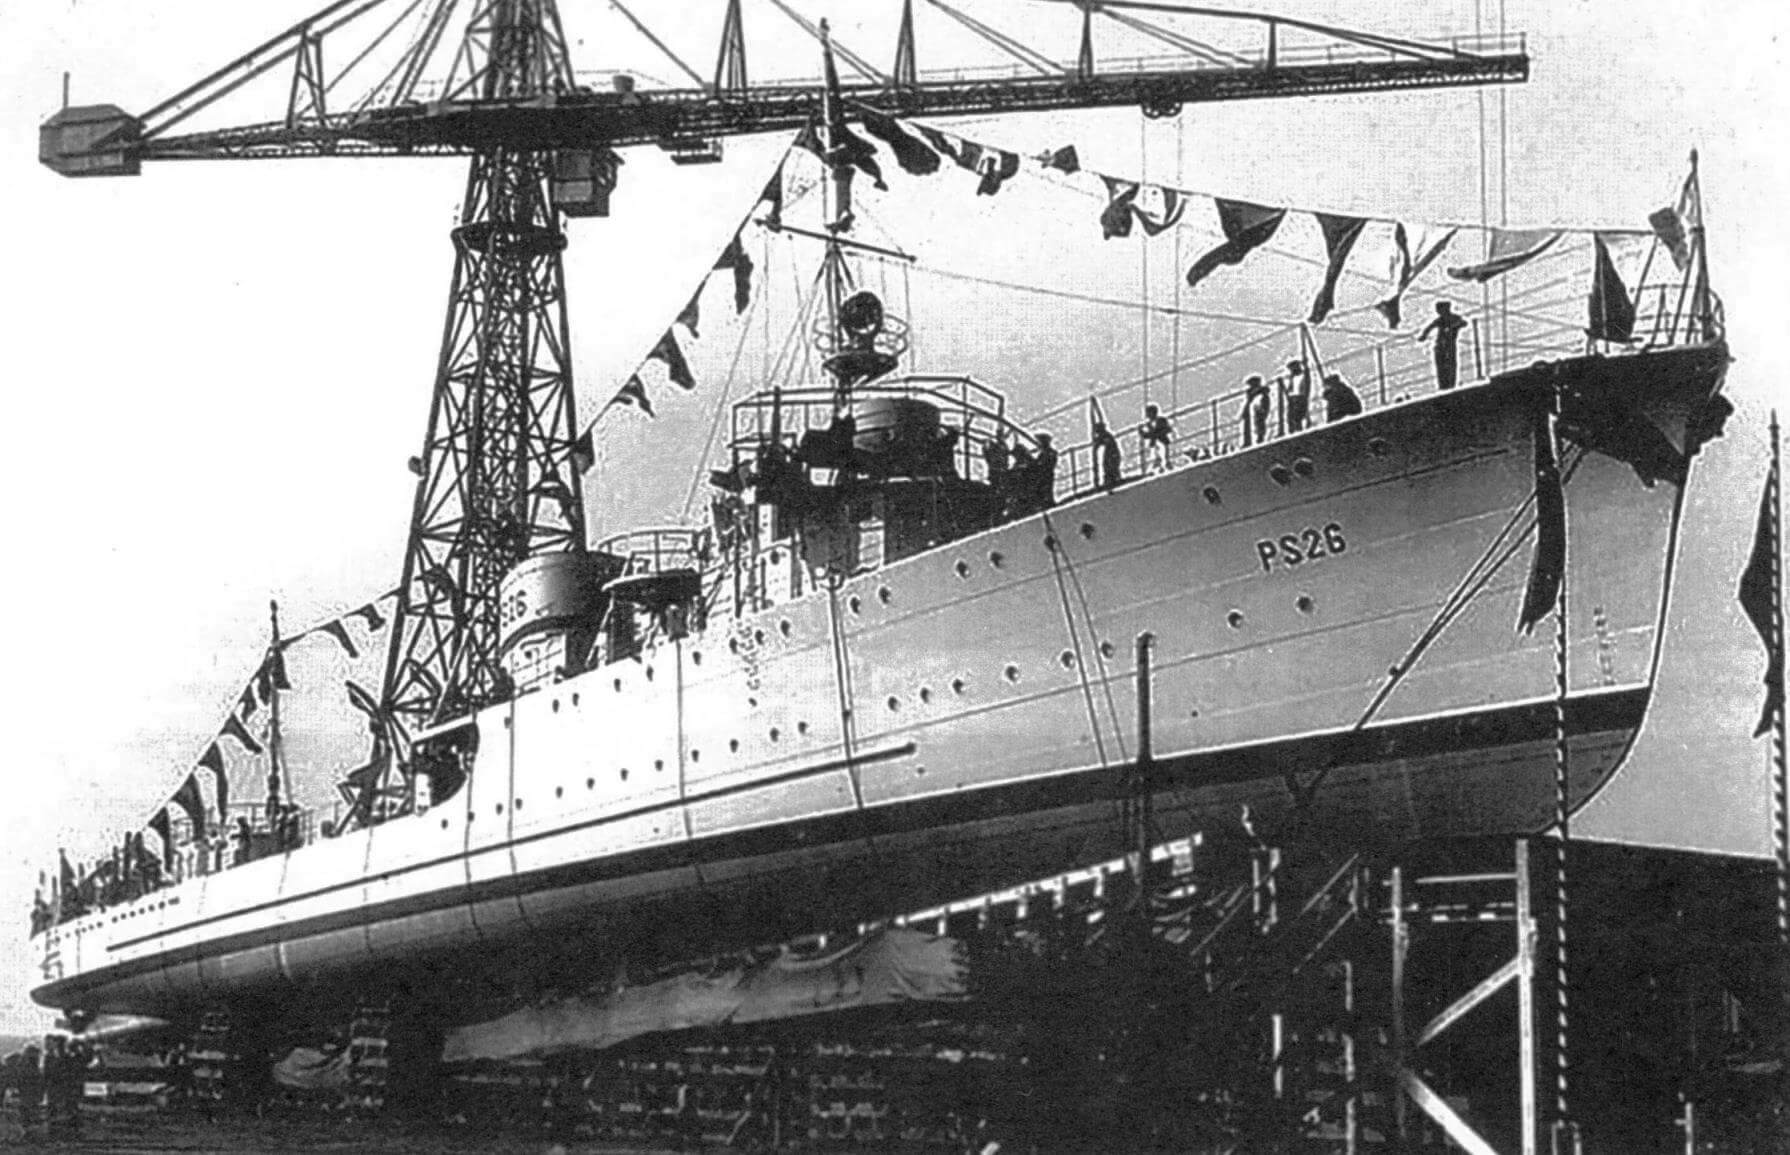 Сторожевой корабль PS.26 перед спуском на воду, 1934 год